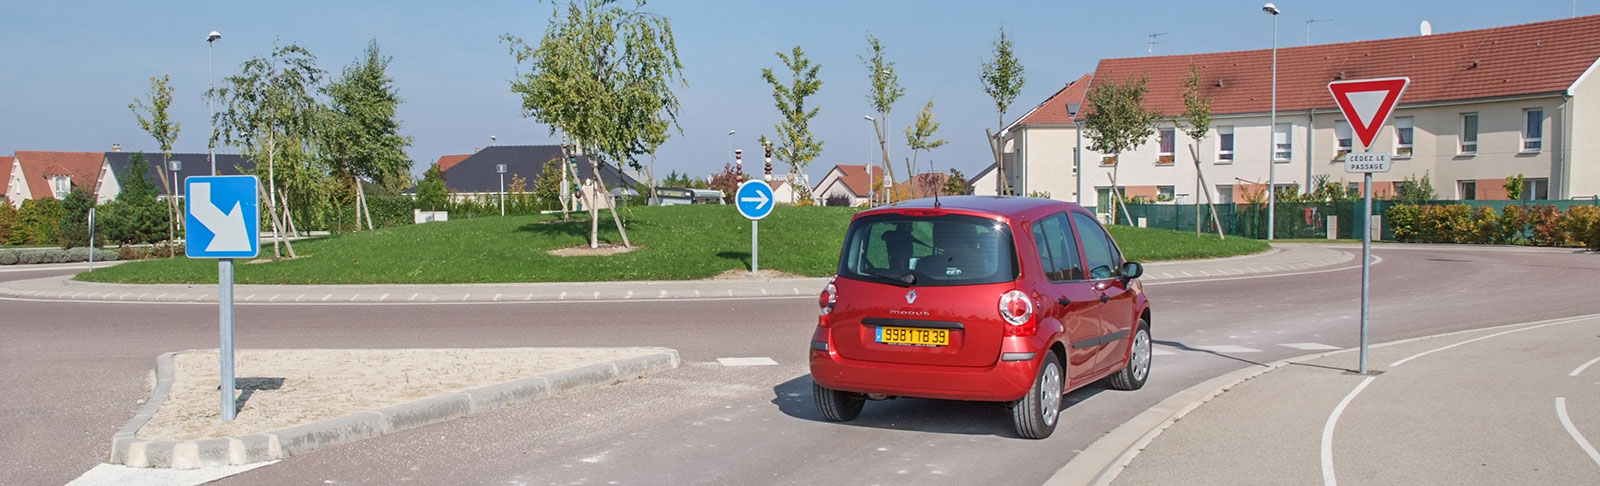 Panneau d'obligation de parking direction à gauche